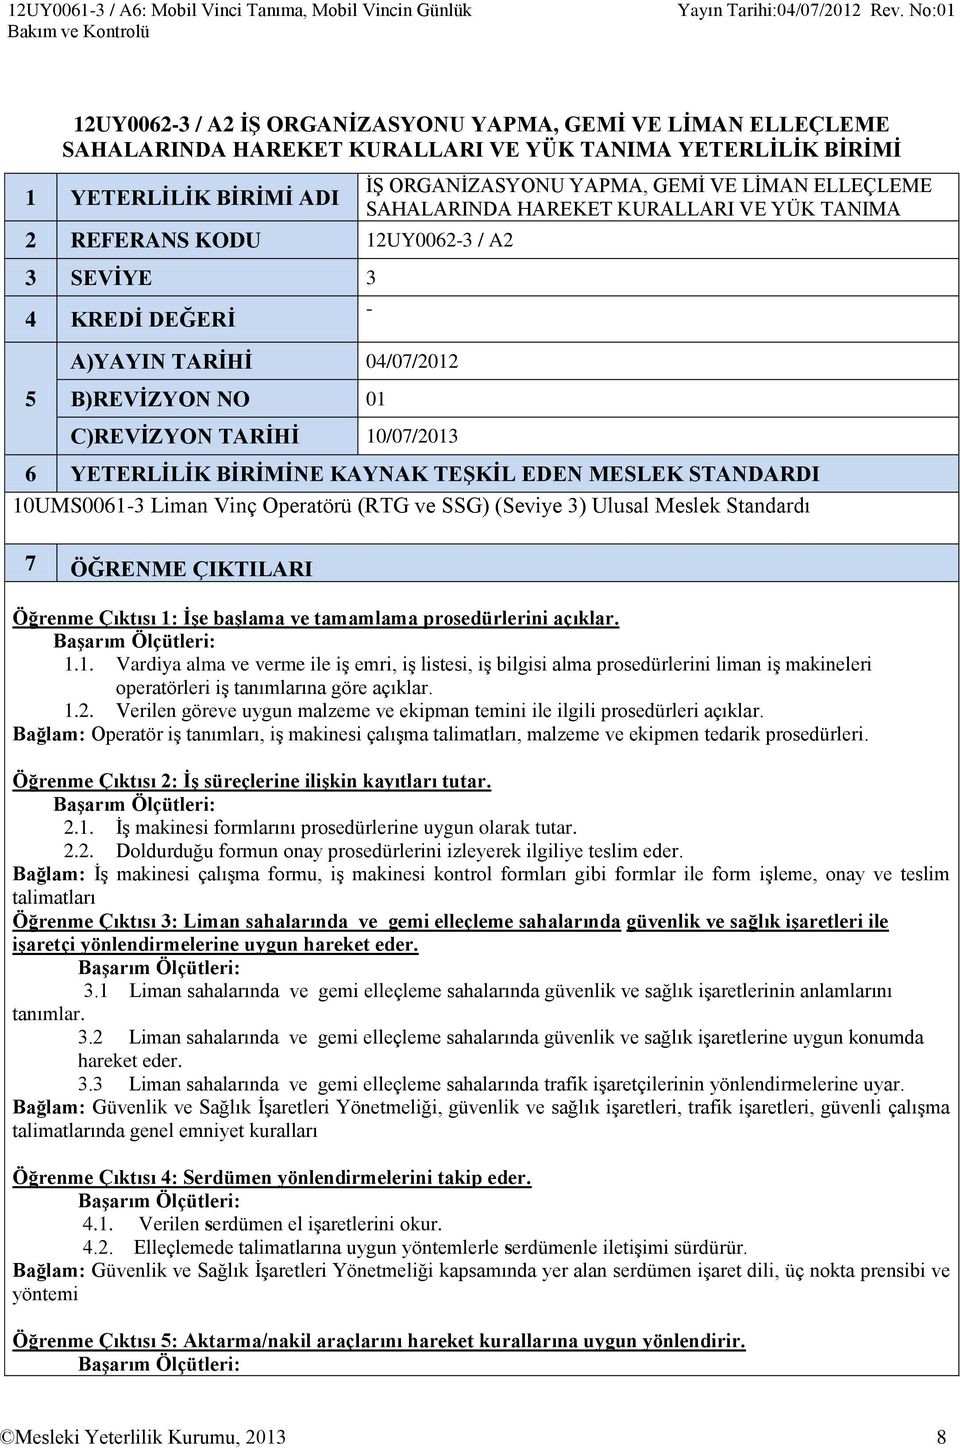 TANIMA - 5 B)REVİZYON NO 01 C)REVİZYON TARİHİ 10/07/2013 6 YETERLİLİK BİRİMİNE KAYNAK TEŞKİL EDEN MESLEK STANDARDI 10UMS0061-3 Liman Vinç Operatörü (RTG ve SSG) (Seviye 3) Ulusal Meslek Standardı 7